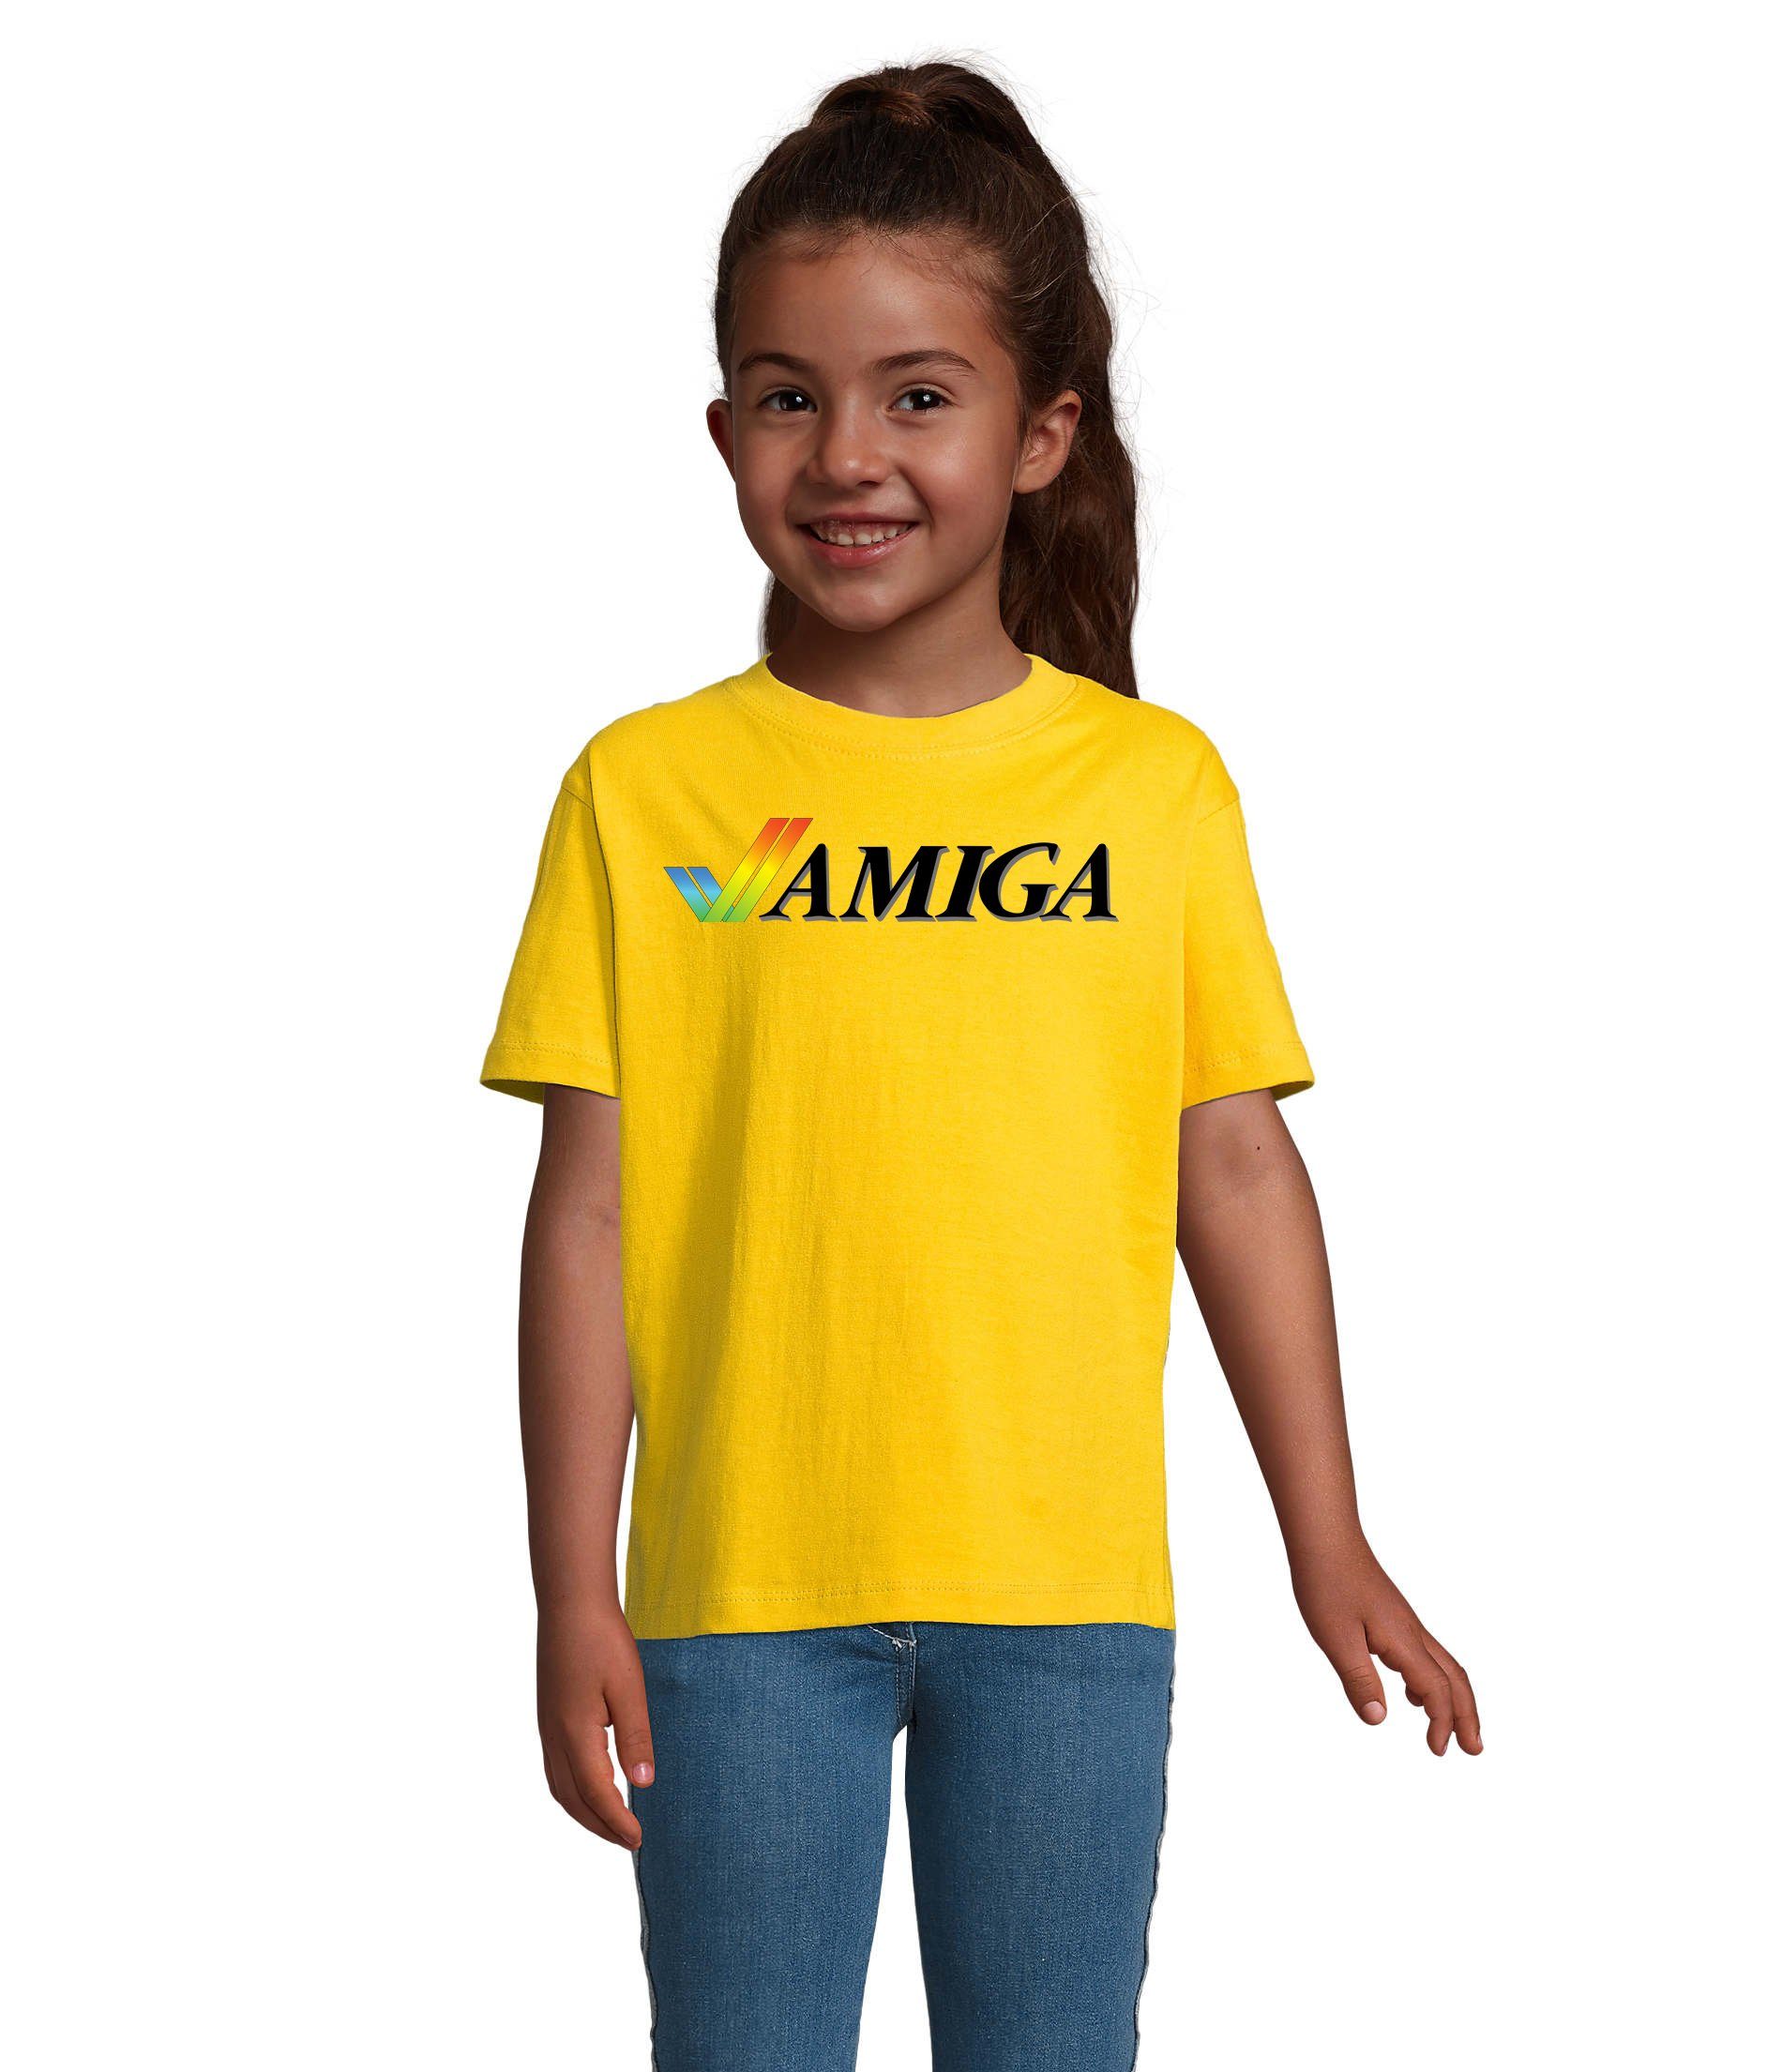 Blondie & Brownie T-Shirt Kinder Jungen & Mädchen Amiga Spiele Konsole Atari Commodore Nintendo Gelb | T-Shirts